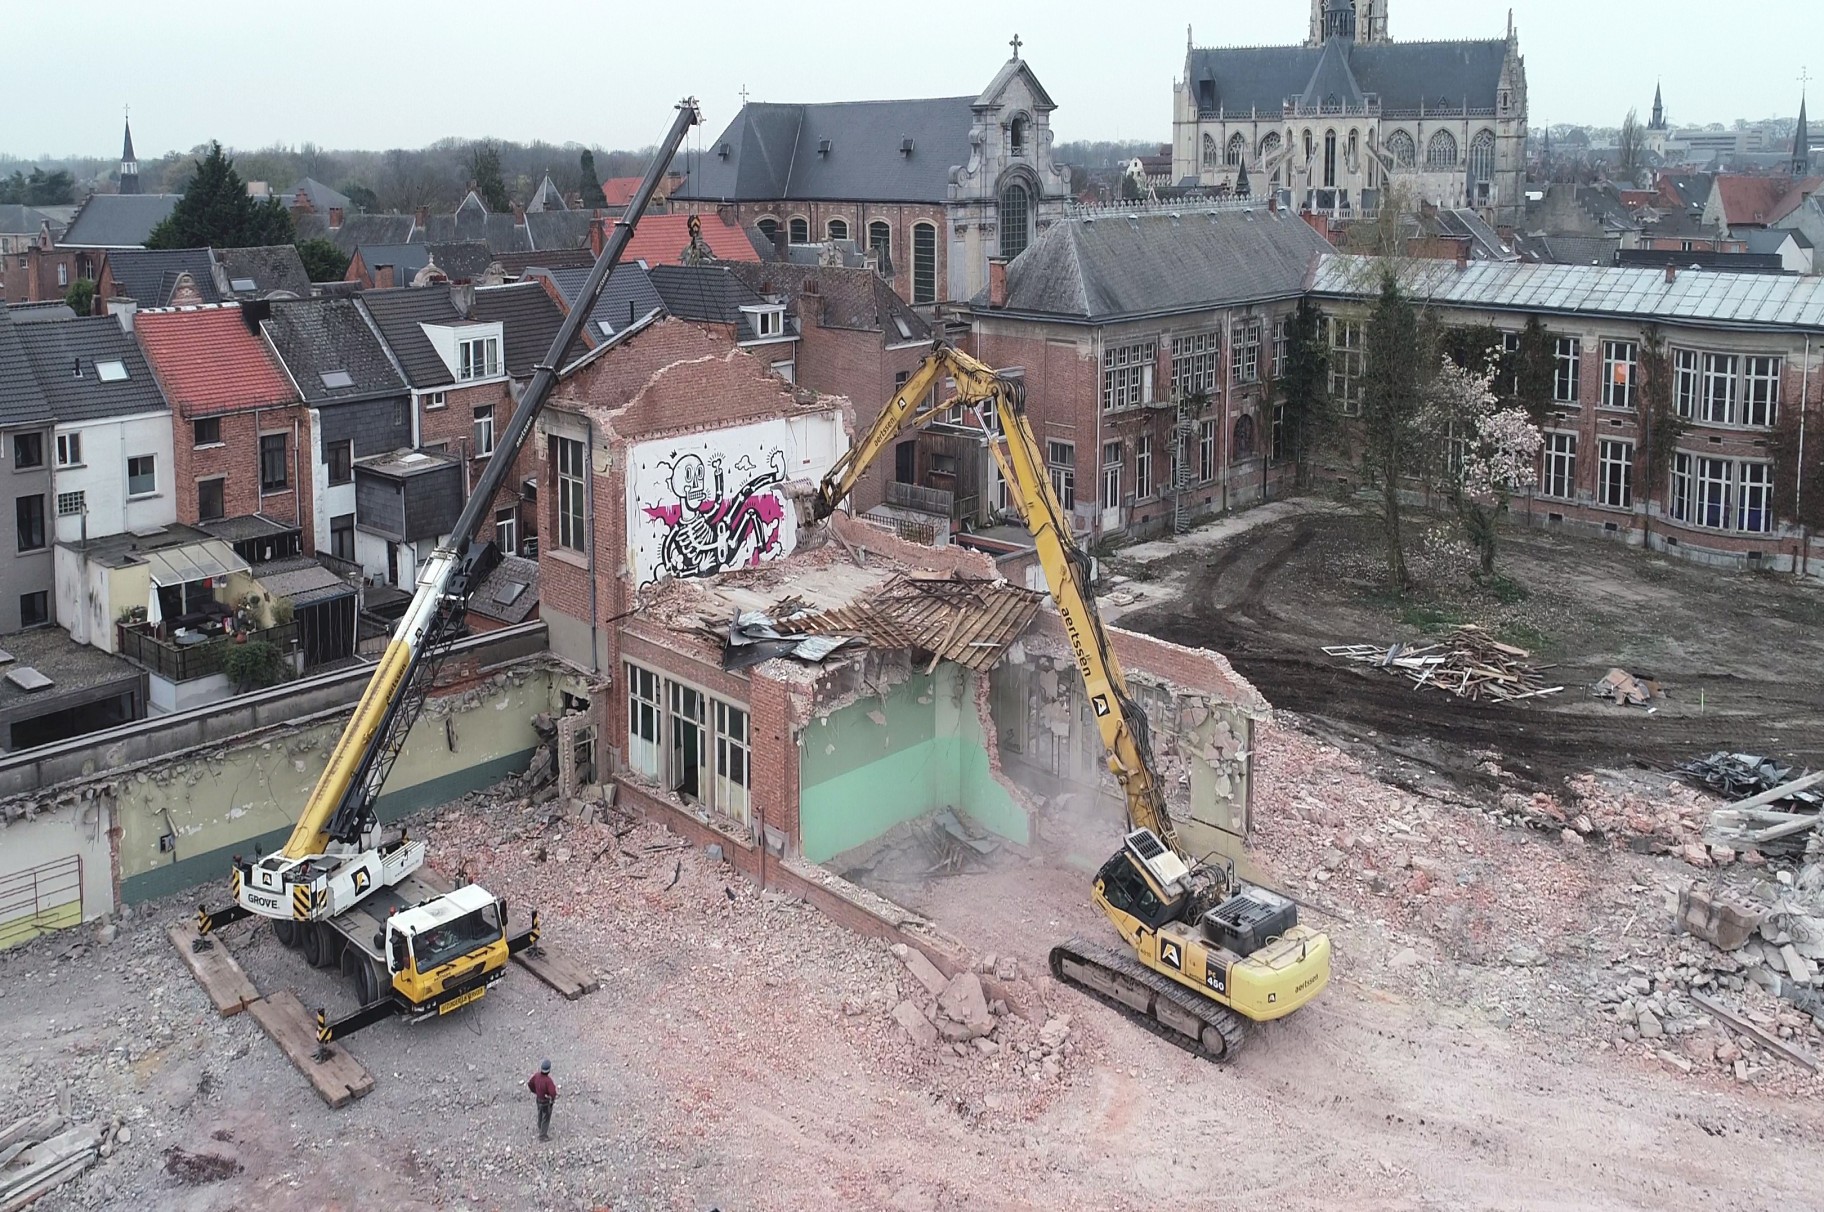 Demolition Normaalschoolsite Lier has started